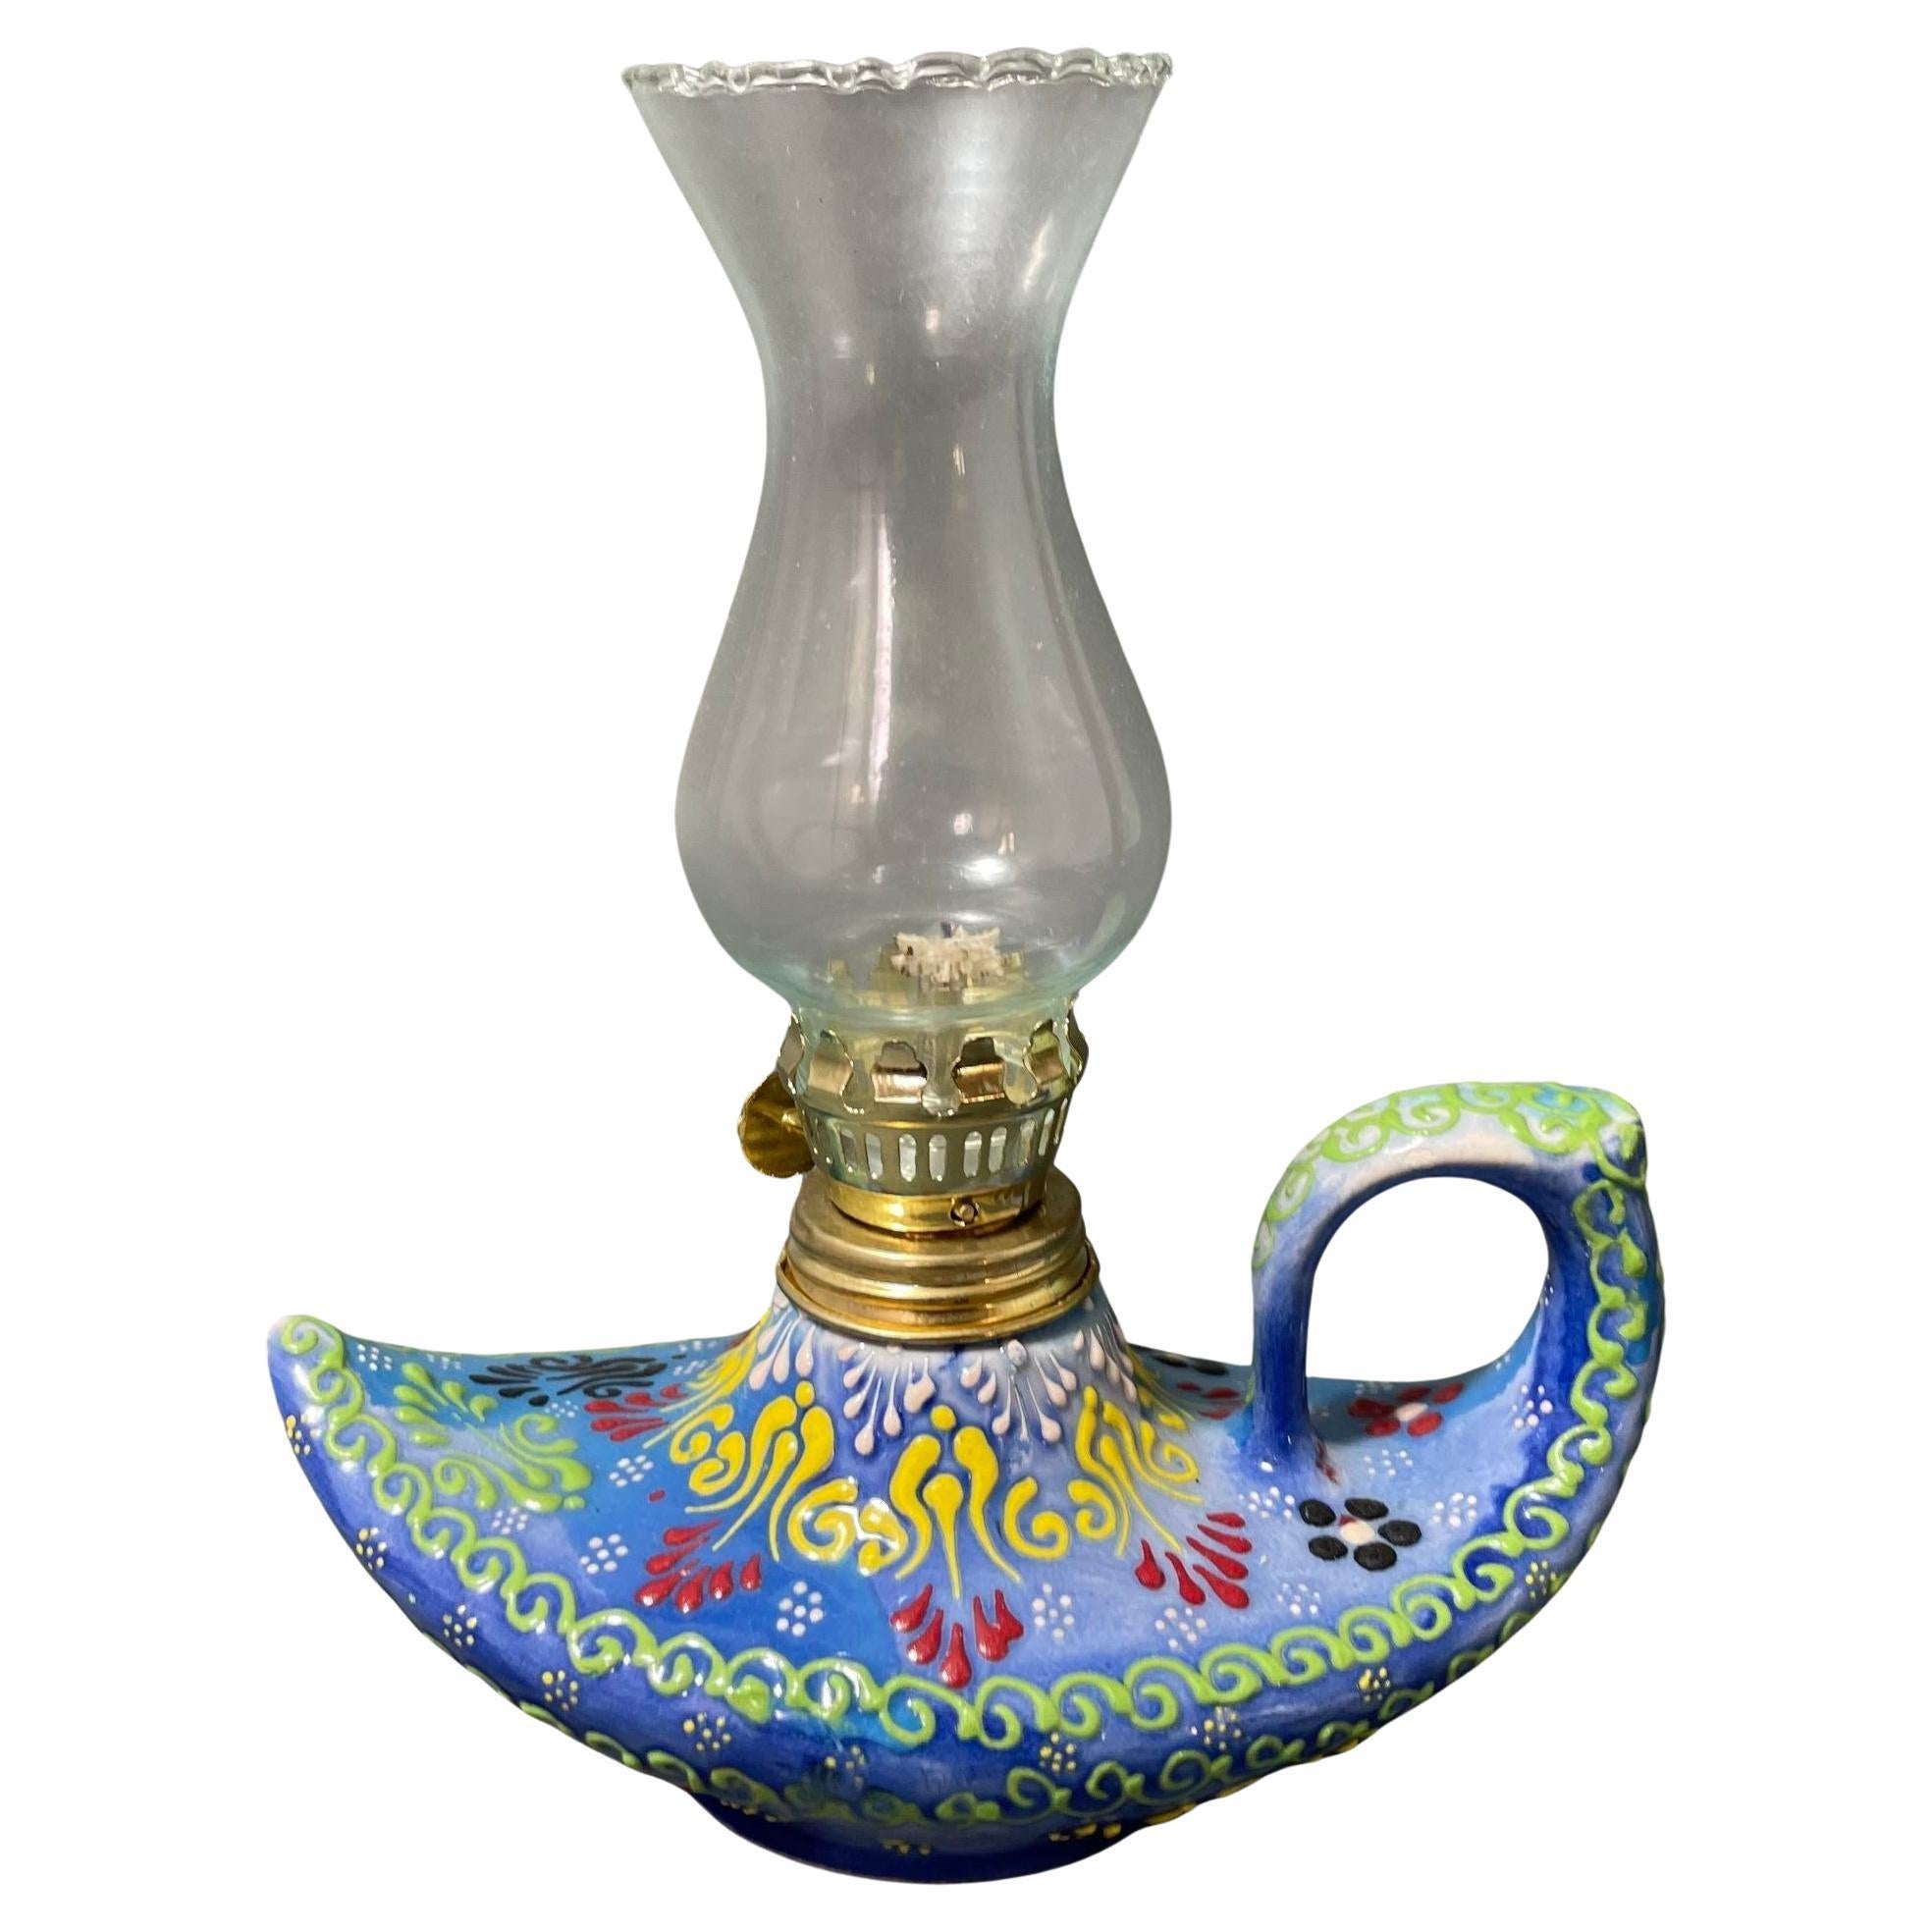 Aladdin élégante lampe à huile turque en céramique bleue faite à la main